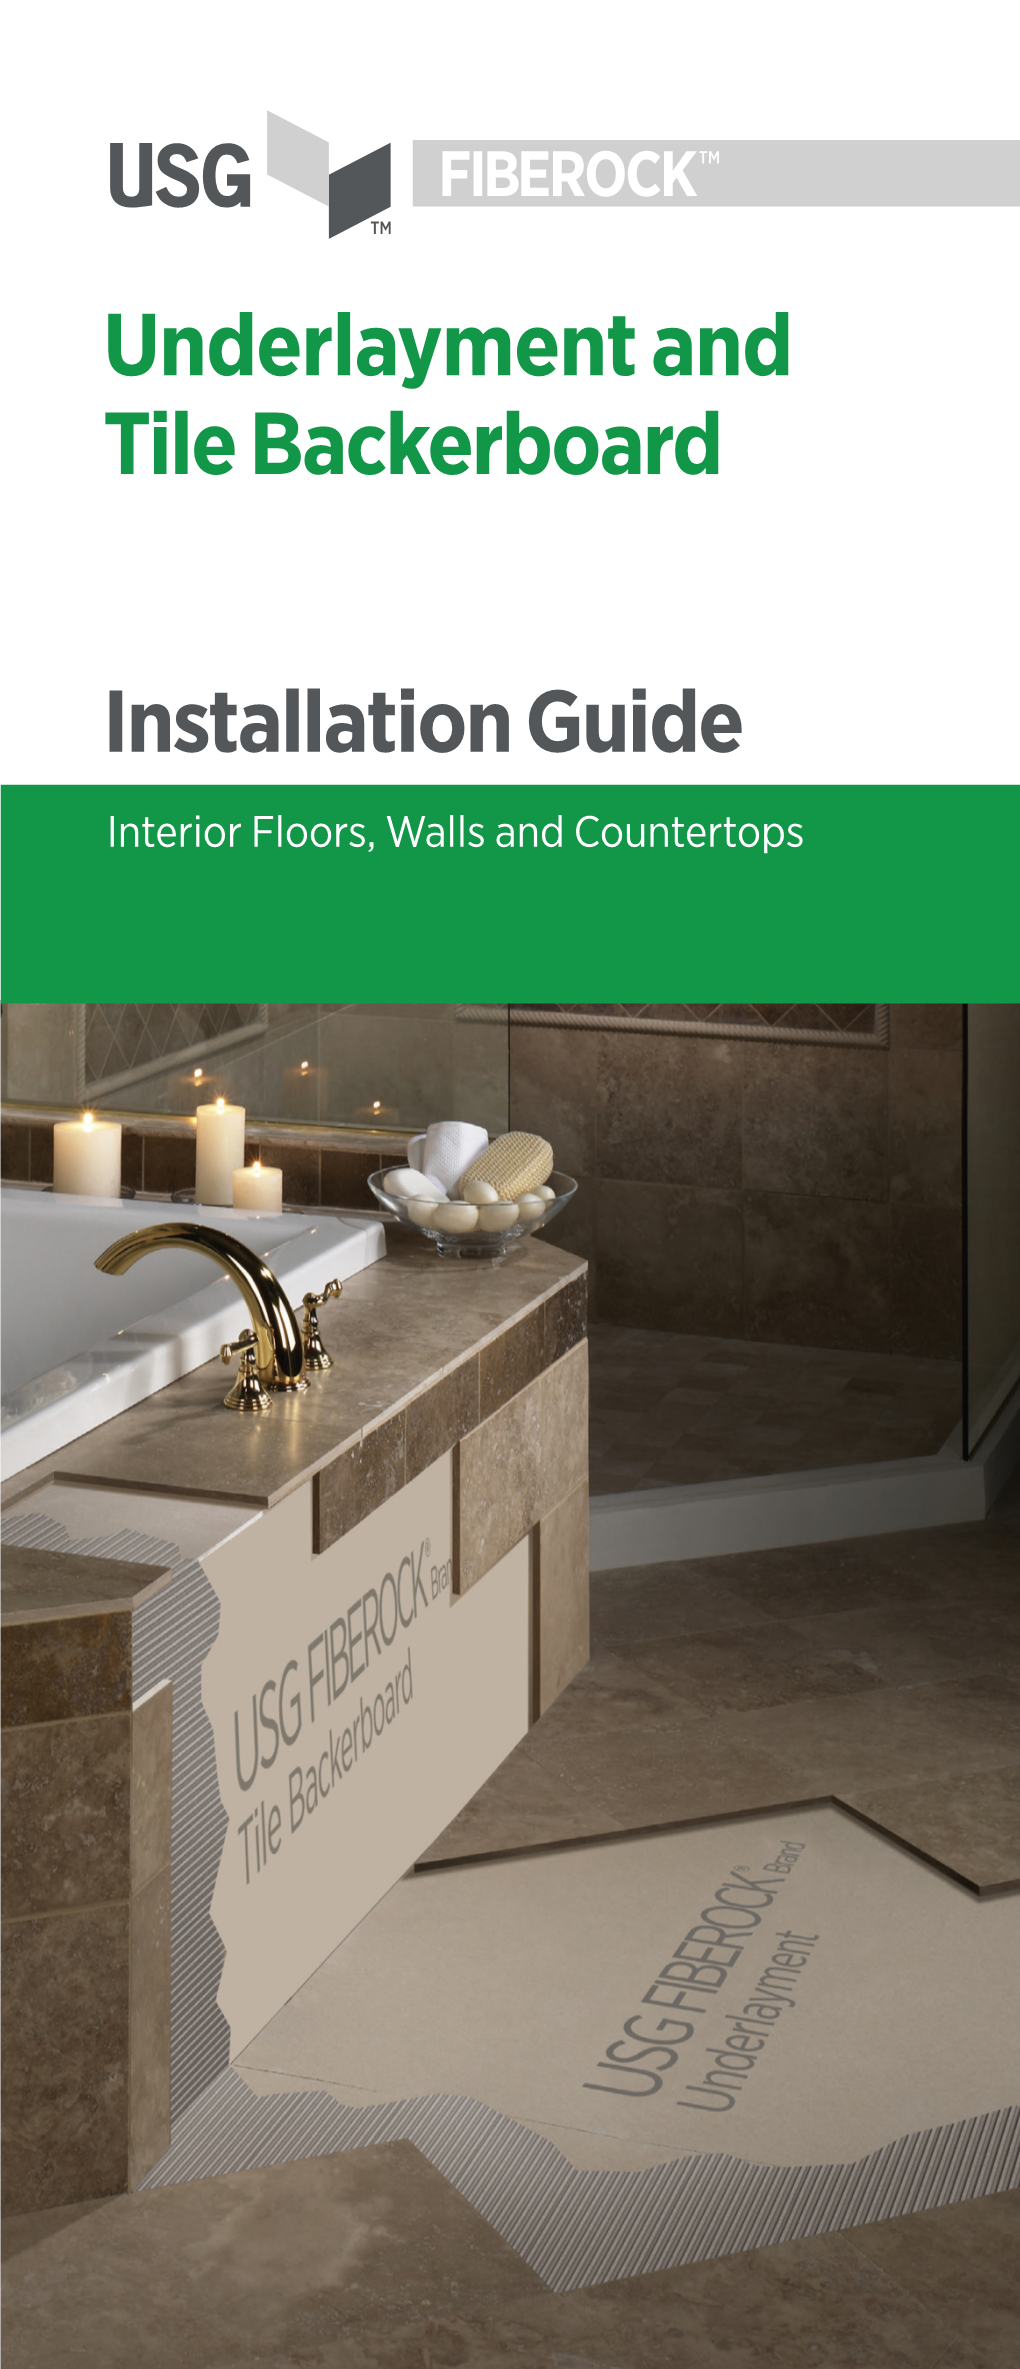 USG Fiberock® Underlayment and Tile Backerboard Installation Guide